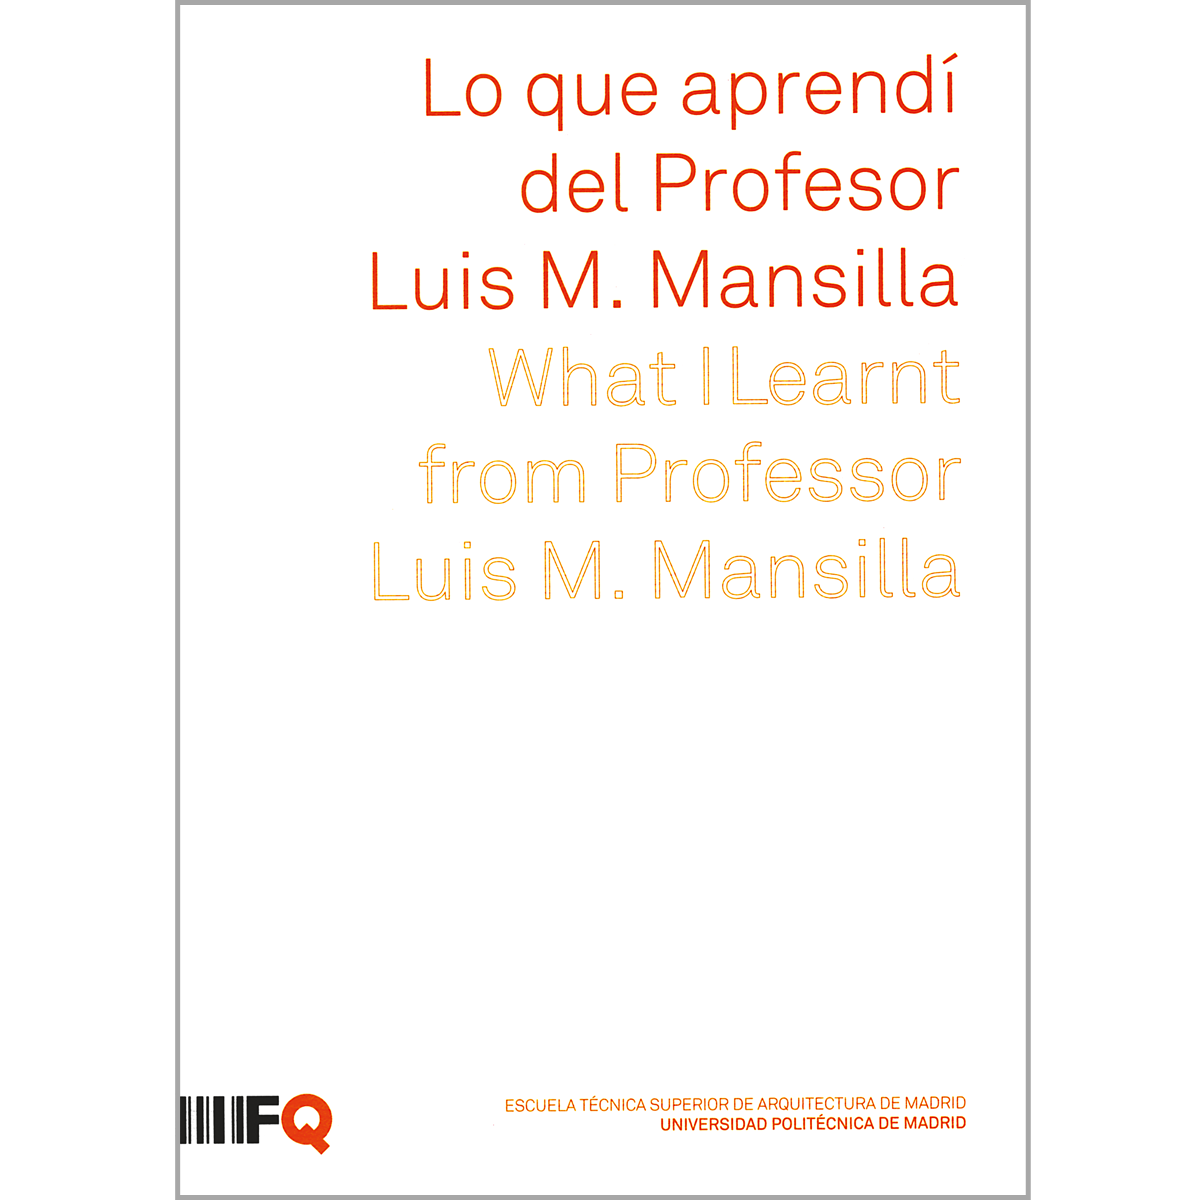 Lo que aprendí del Profesor  Luis M. Mansilla